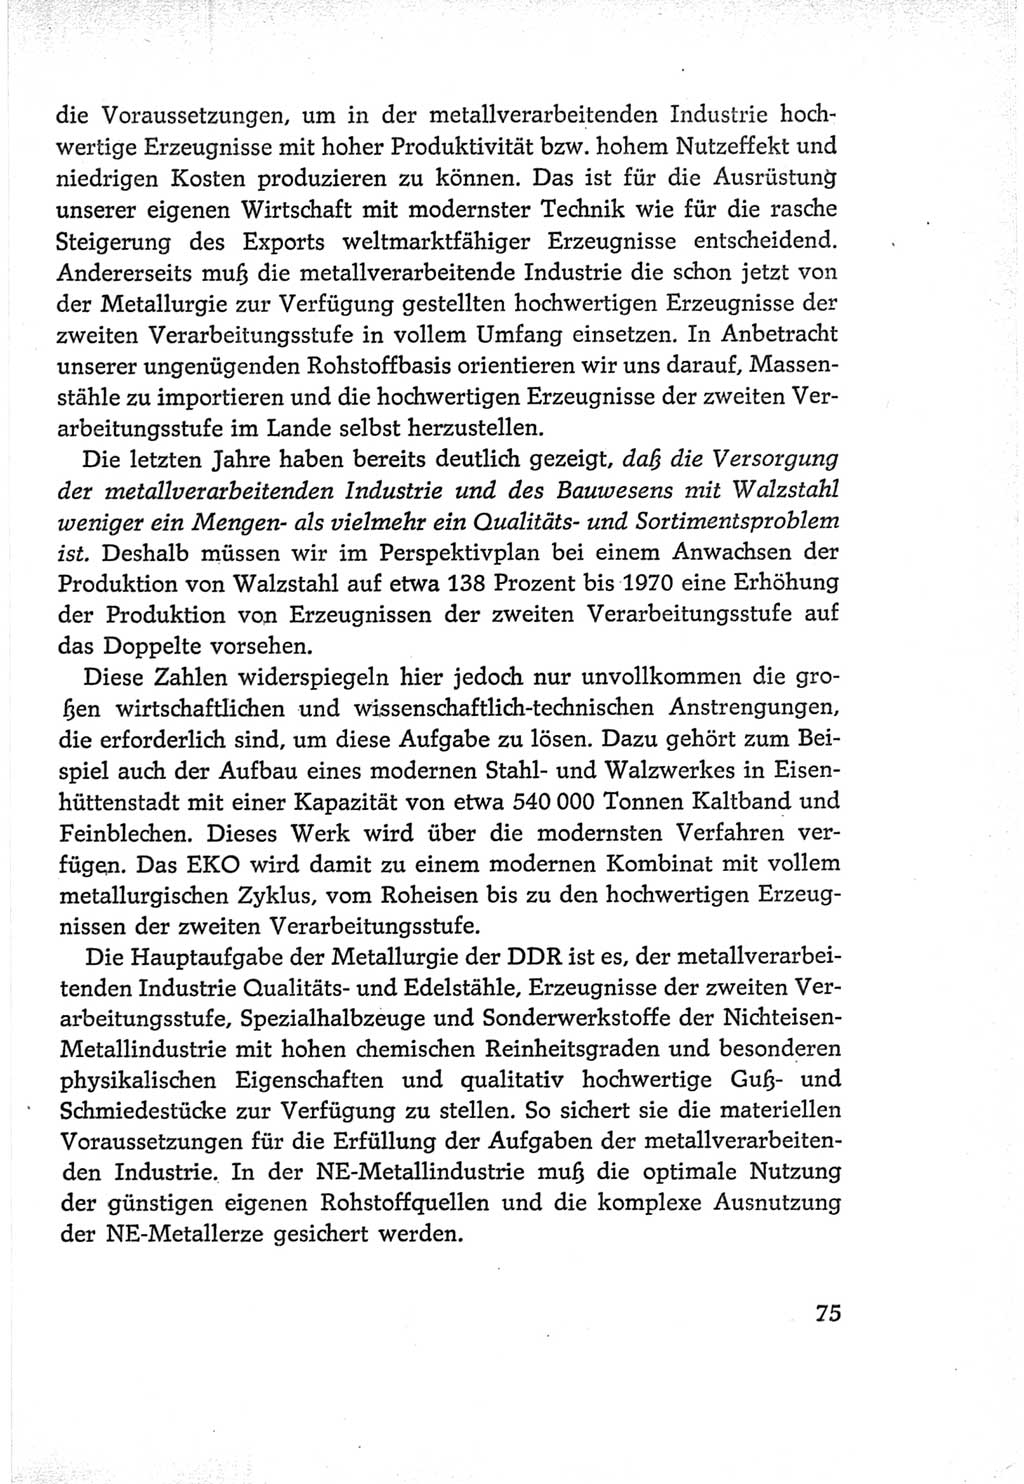 Protokoll der Verhandlungen des Ⅵ. Parteitages der Sozialistischen Einheitspartei Deutschlands (SED) [Deutsche Demokratische Republik (DDR)] 1963, Band Ⅰ, Seite 75 (Prot. Verh. Ⅵ. PT SED DDR 1963, Bd. Ⅰ, S. 75)